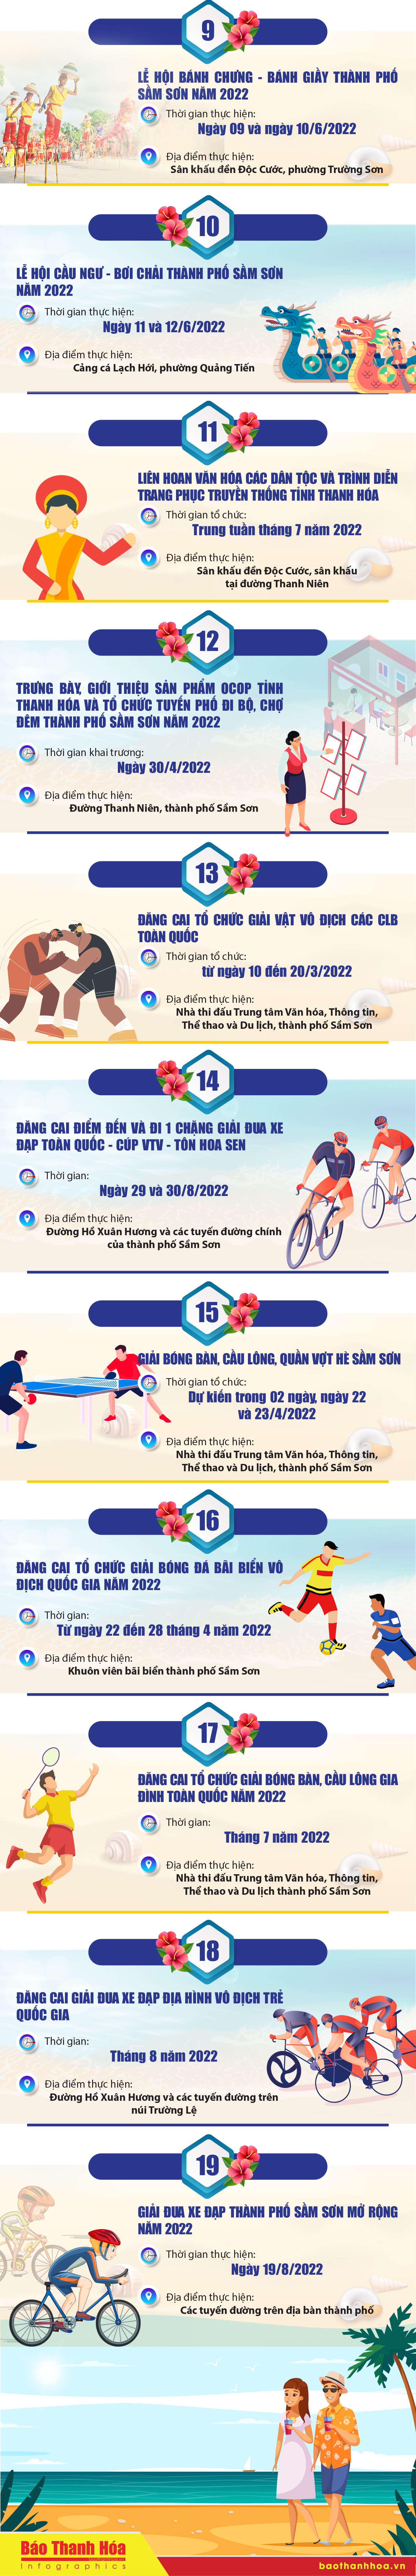 [Infographic] - Các hoạt động văn hóa, thể thao và du lịch năm 2022 tại Sầm Sơn